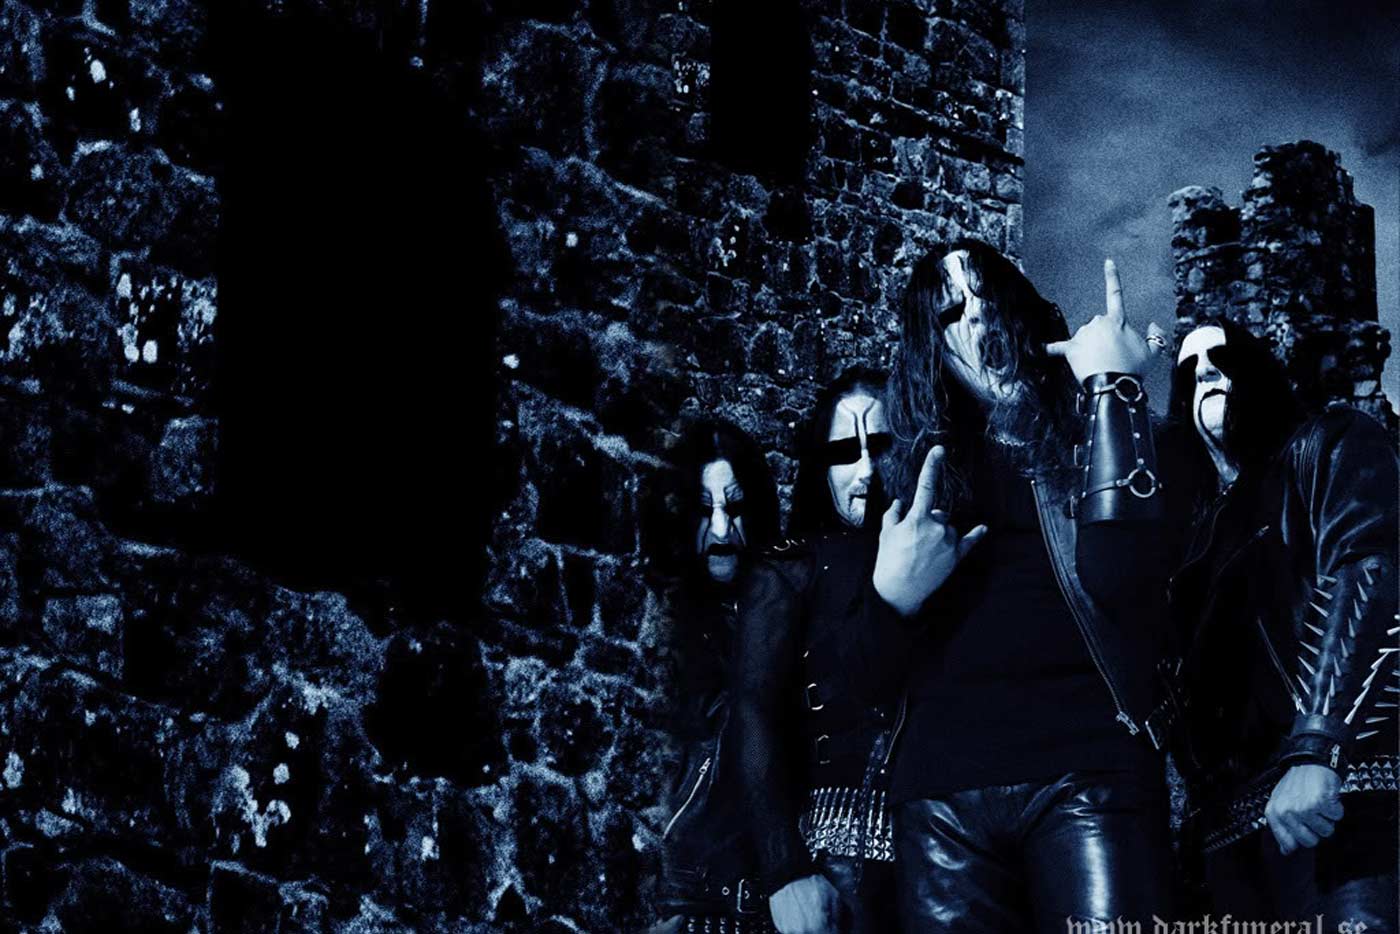 Dark Funeral visitarán Madrid y Barcelona en octubre